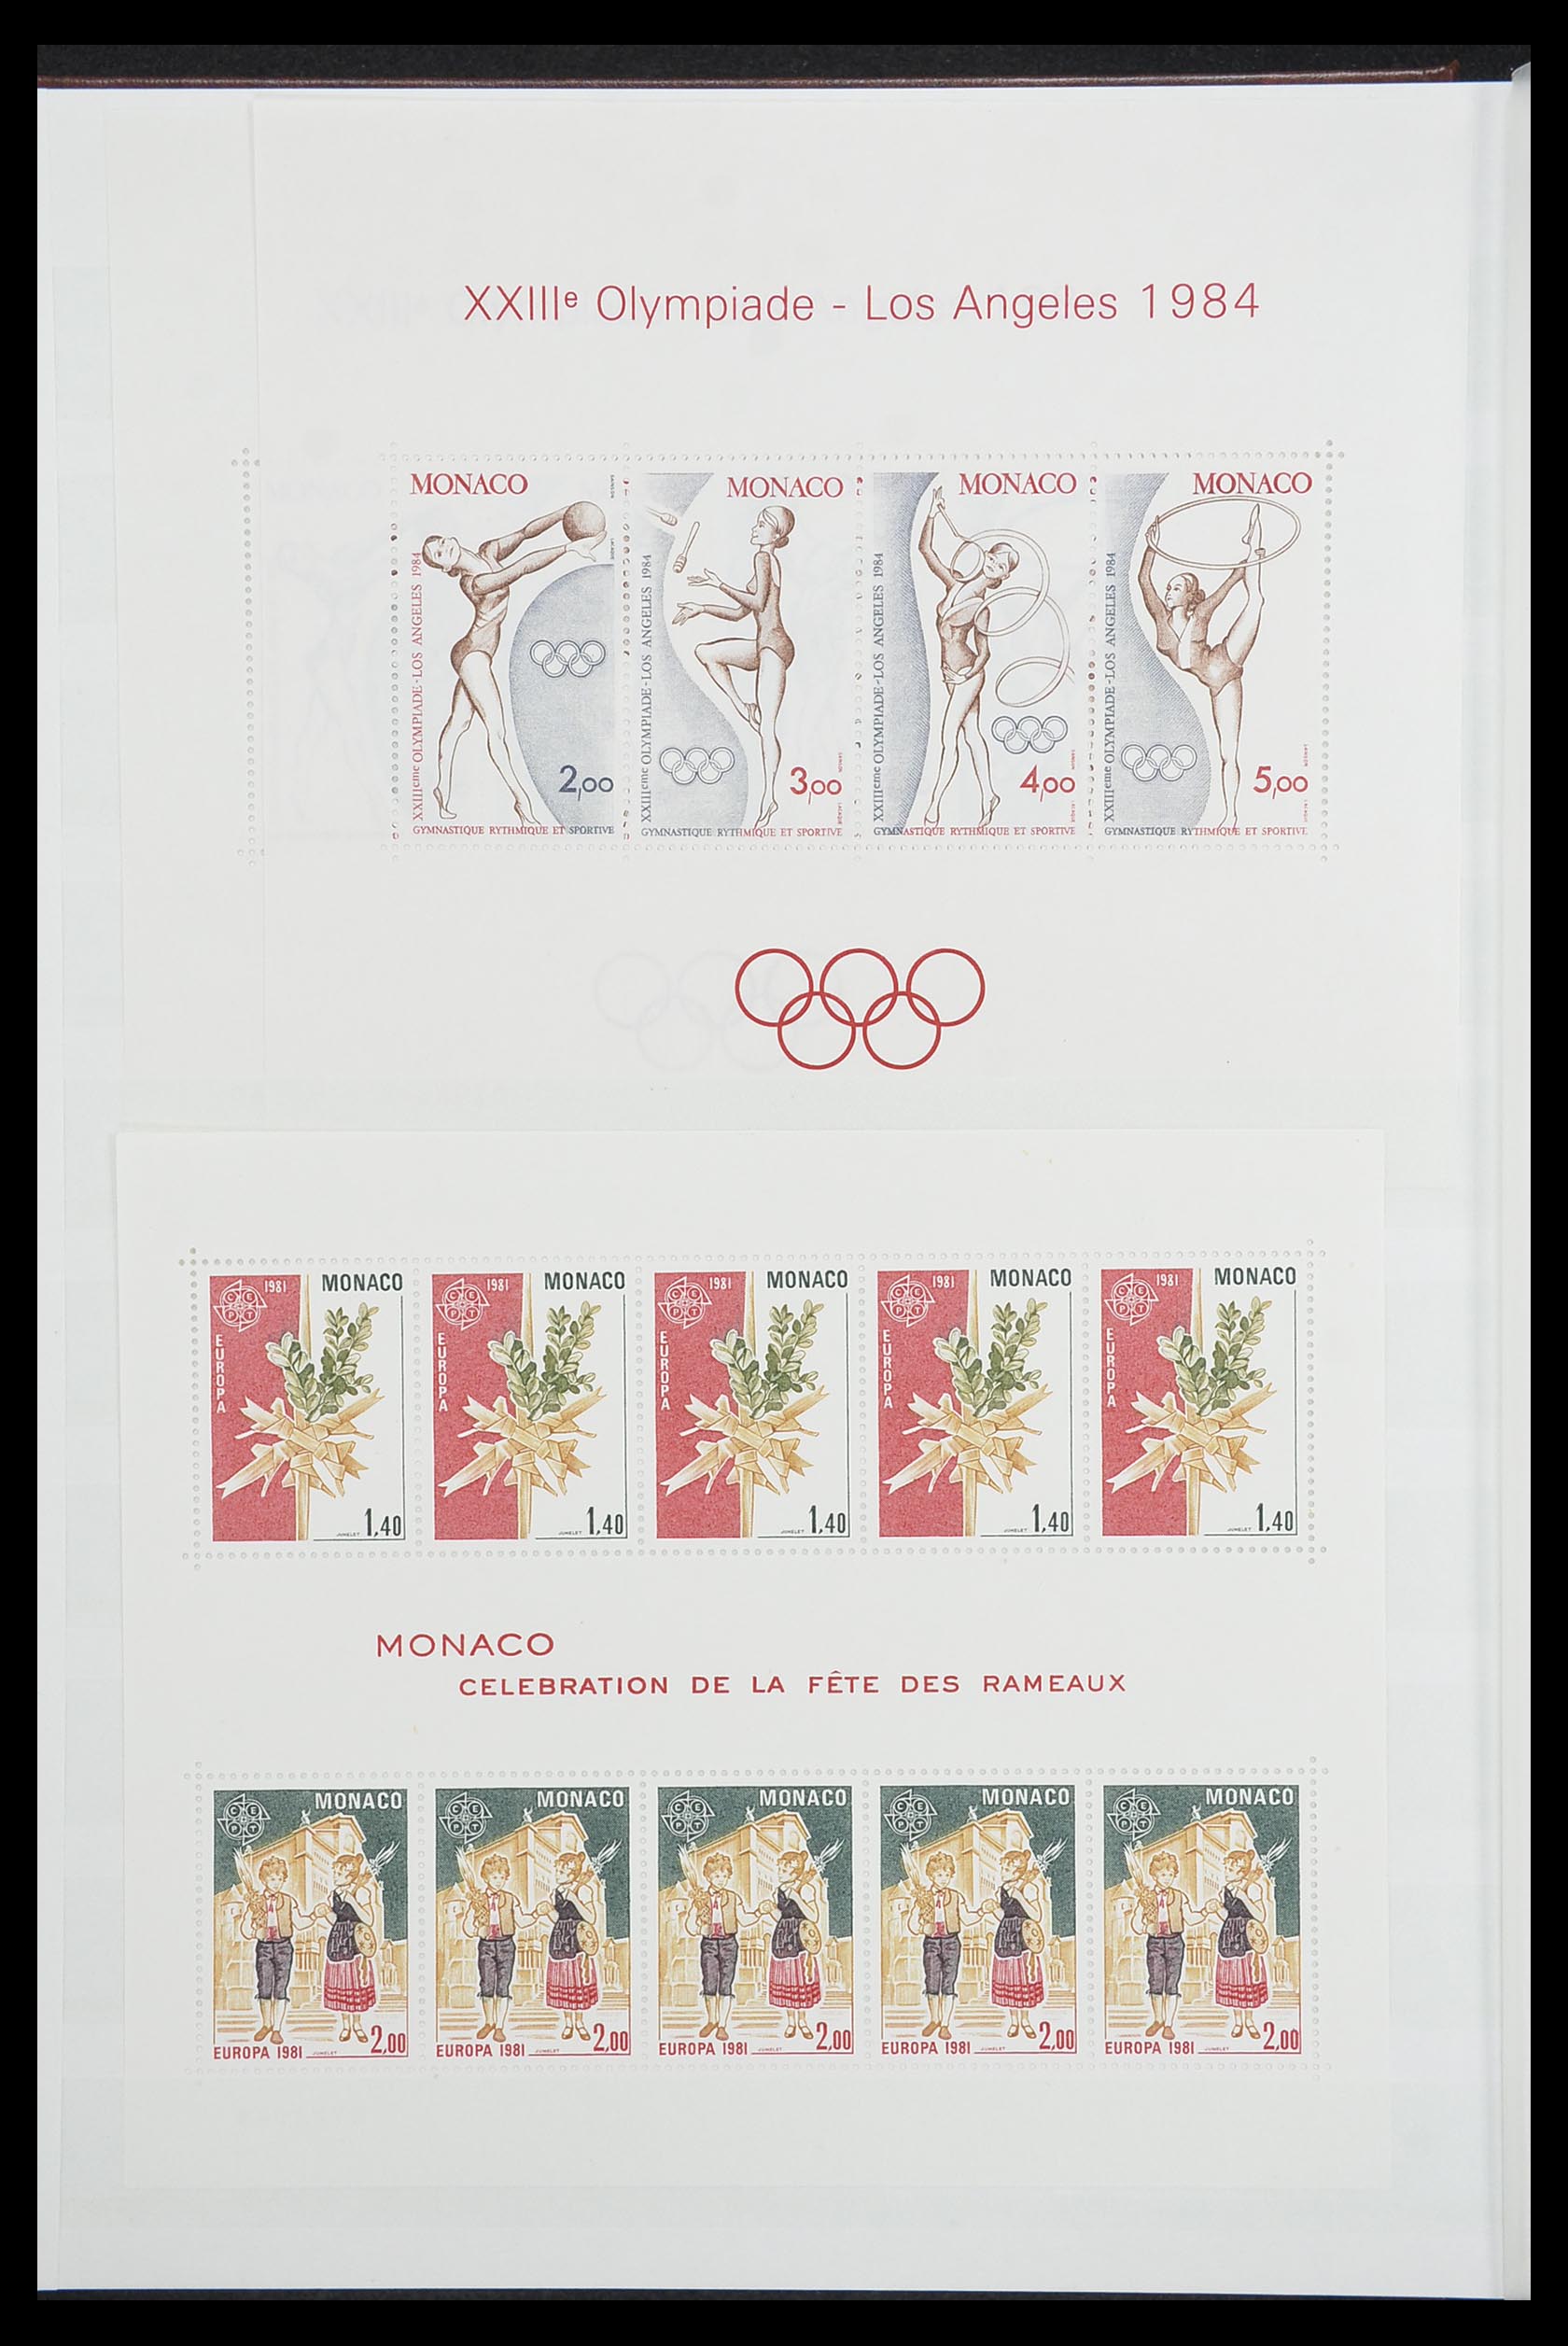 33833 002 - Stamp collection 33833 Monaco souvenir sheets 1979-2015.